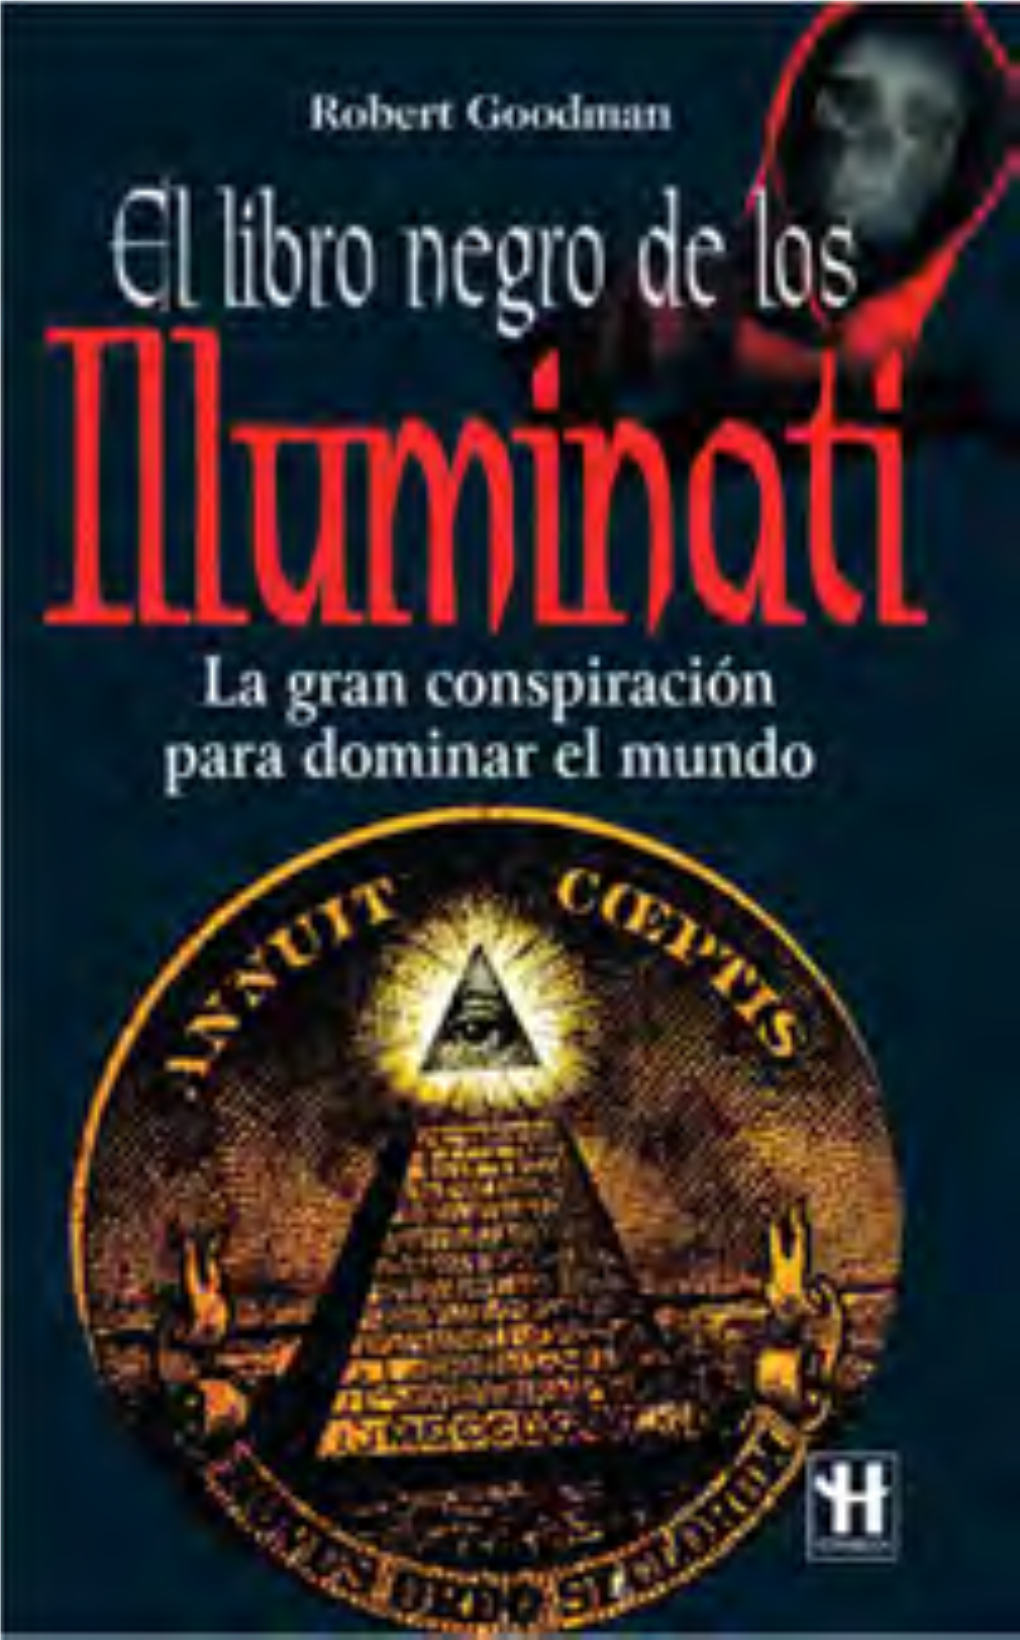 Libro Negro De Los Illuminati El Libro Negro 6/10/06 11:15 Página 4 El Libro Negro 6/10/06 11:15 Página 5